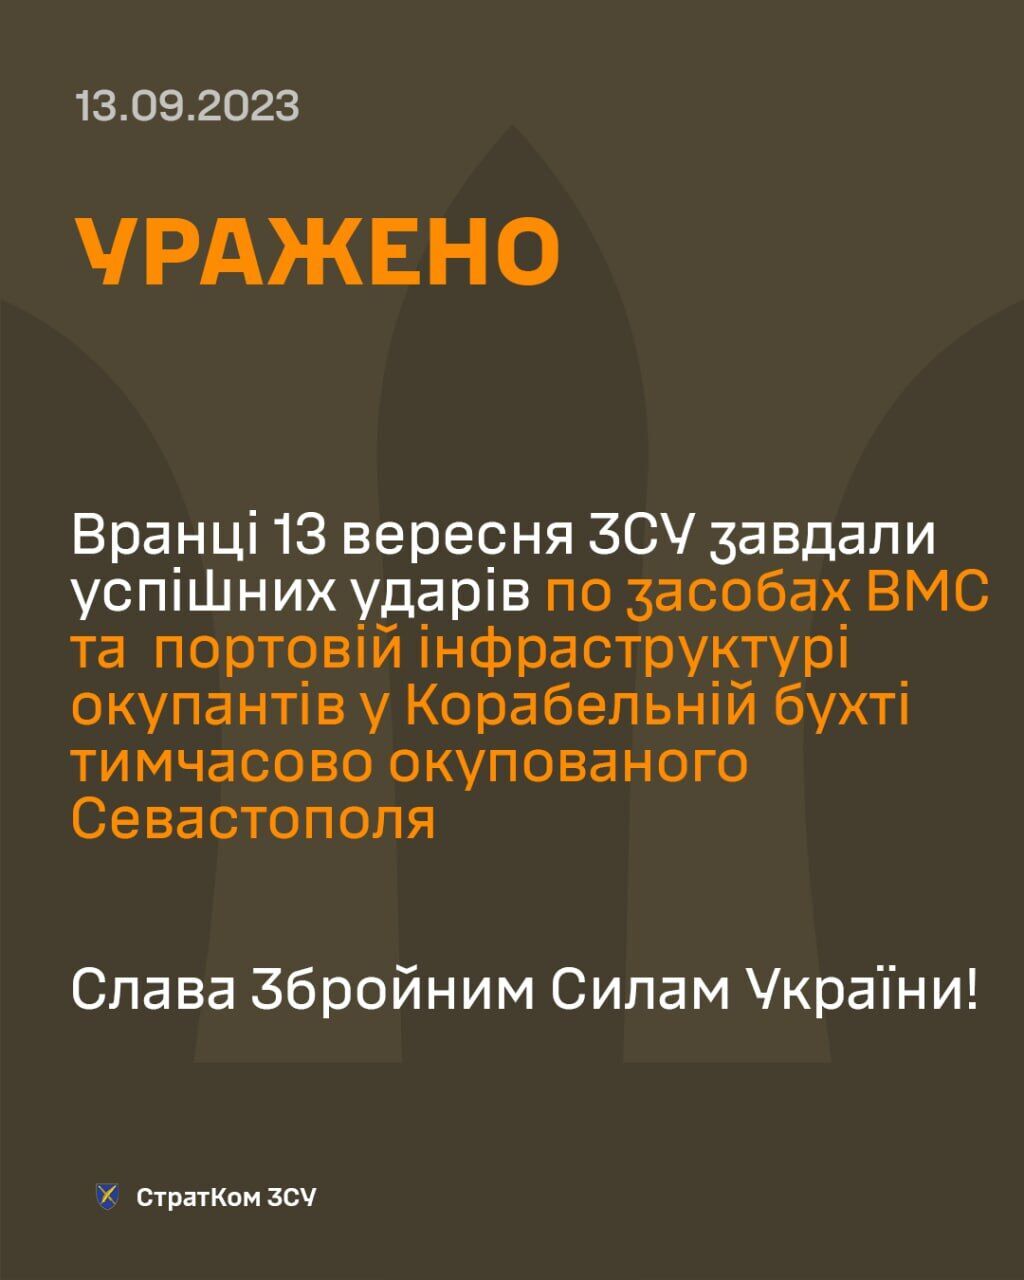 "Есть повреждения": в ГУР подтвердили поражение корабля и подводной лодки в результате атаки на Севастополь